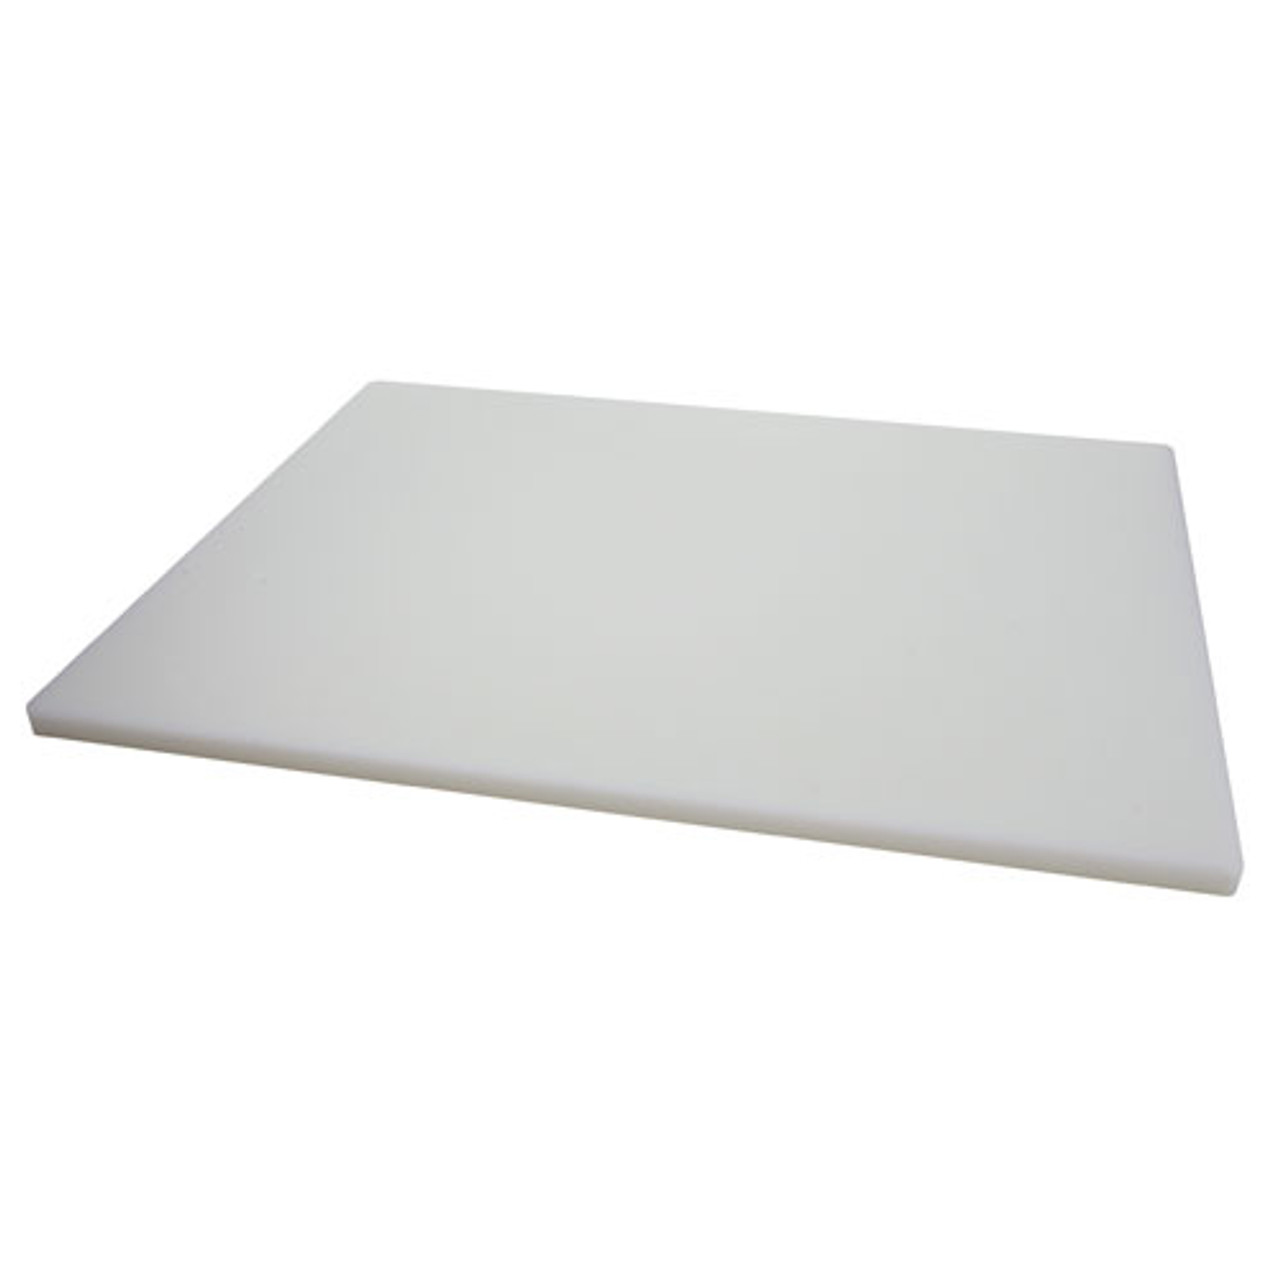 HDPE Cutting Board (15 x 20)